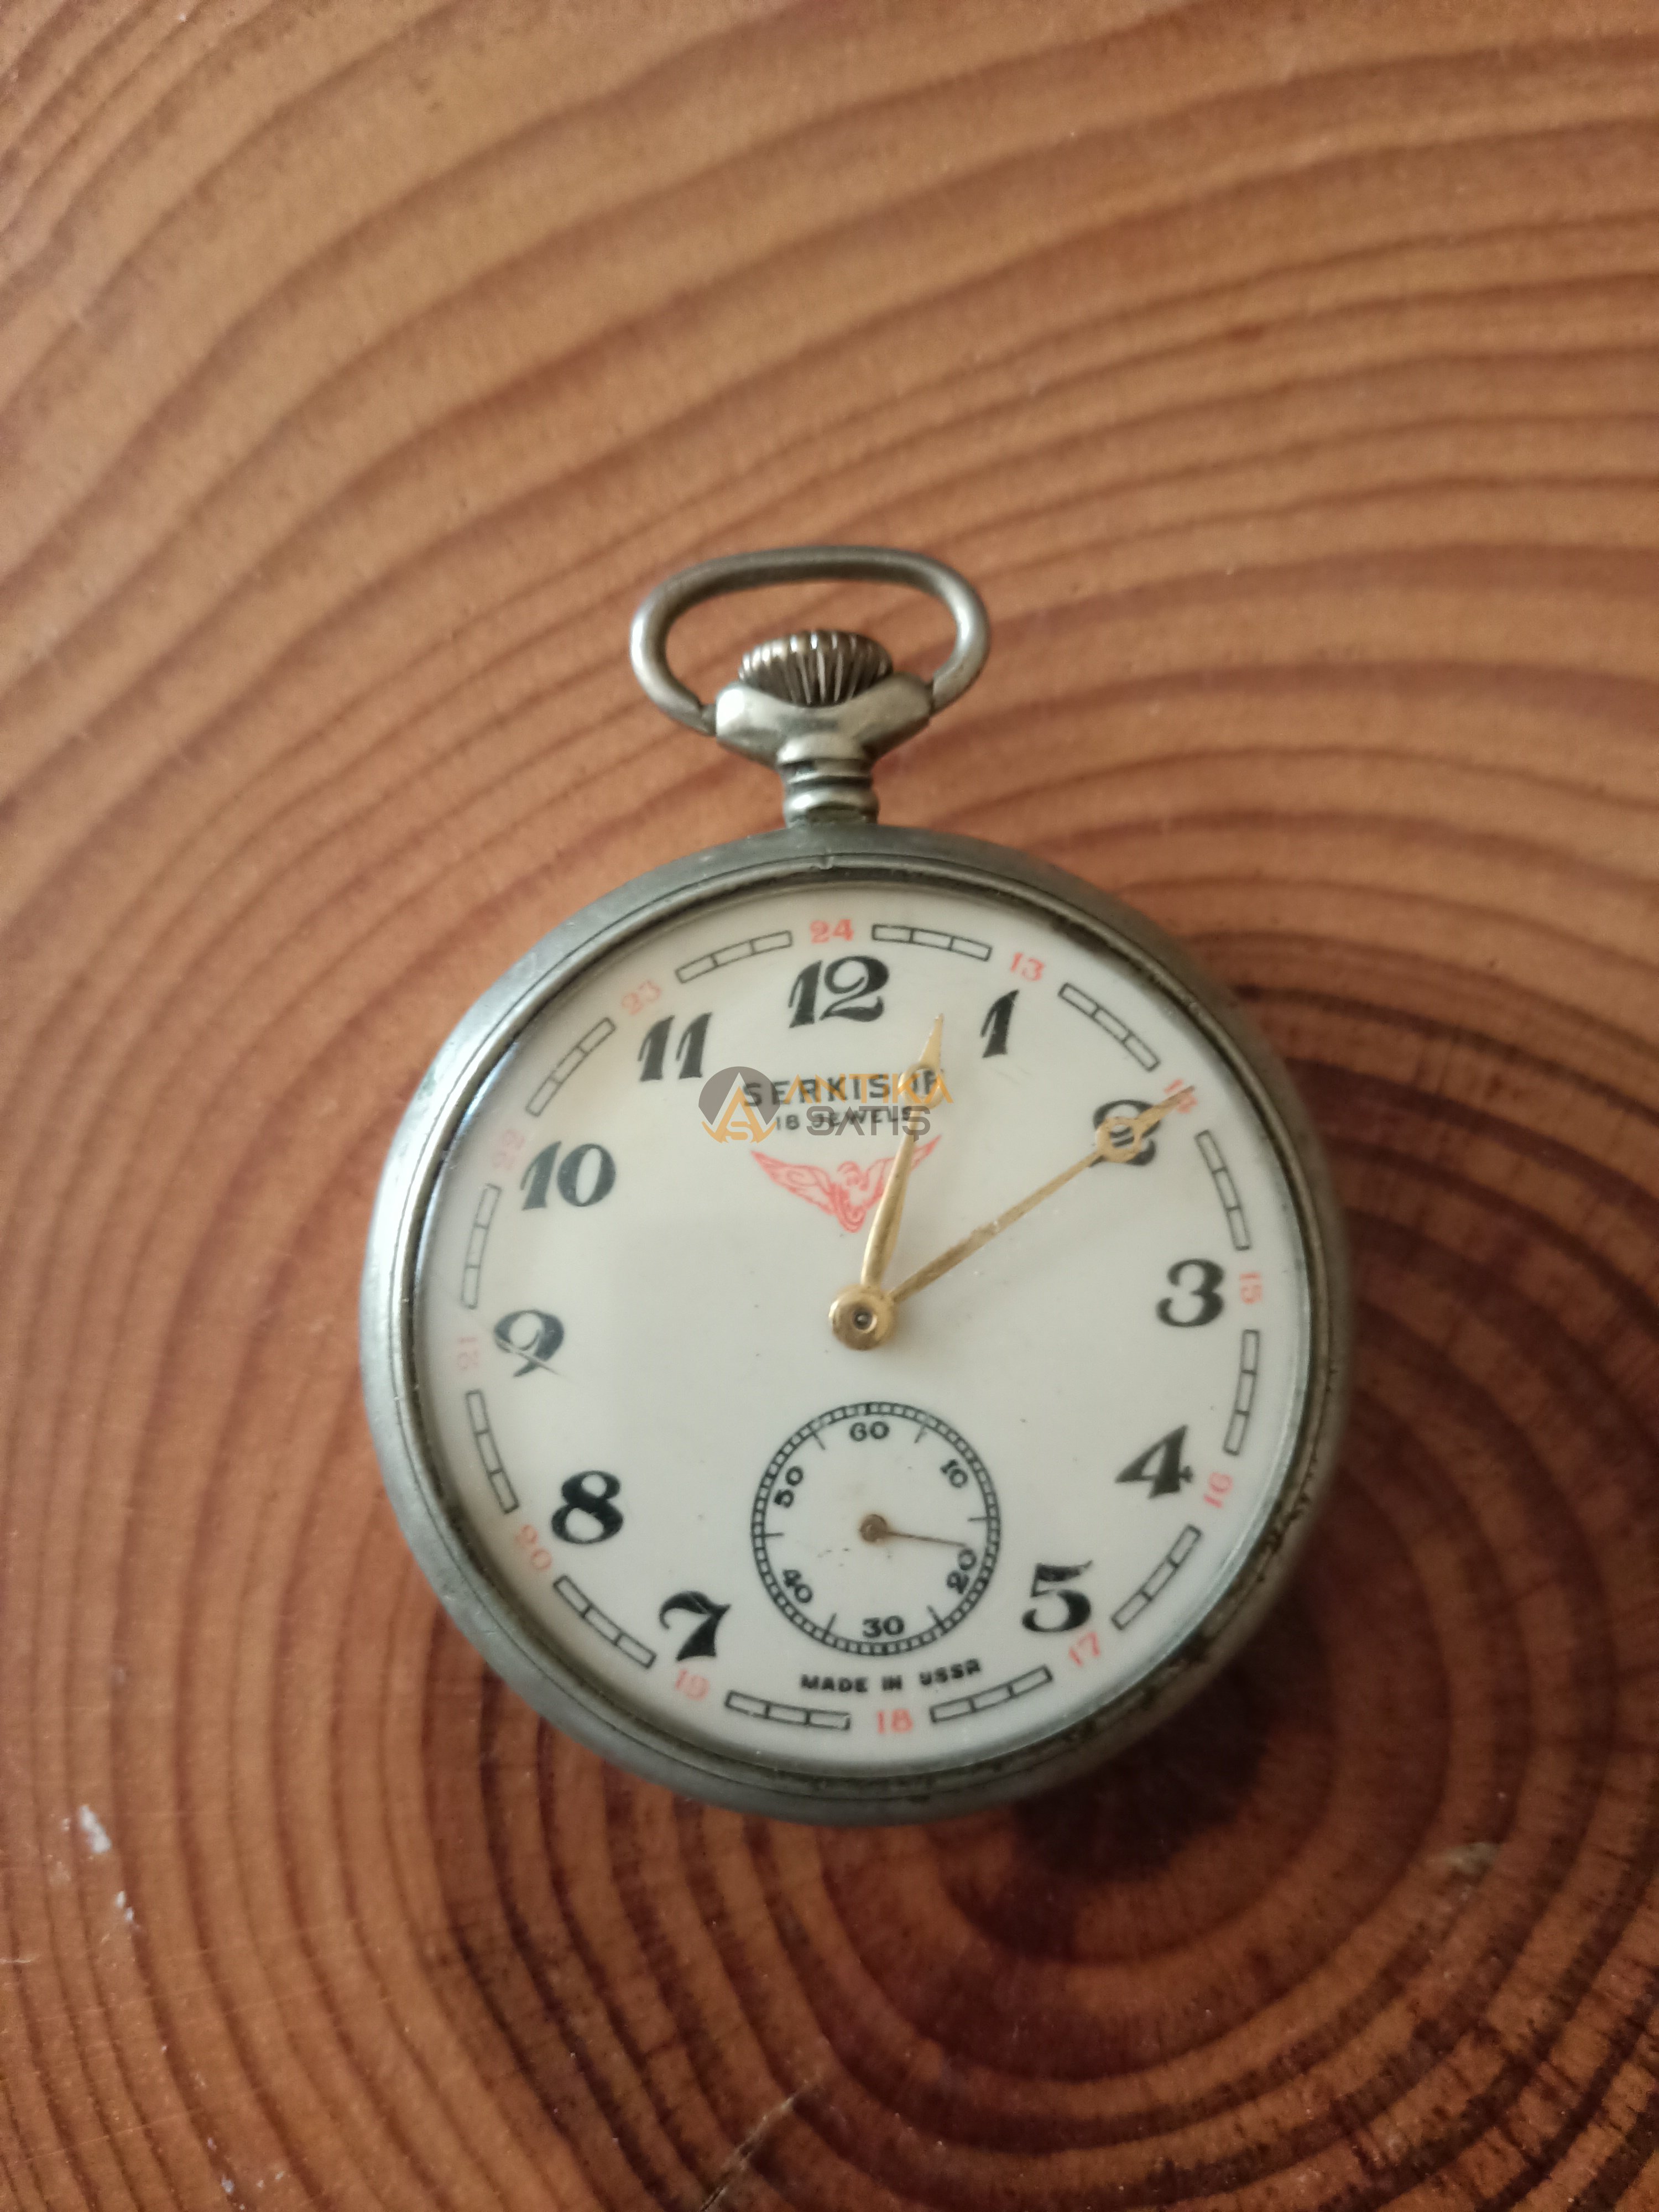 SERKISOF 18 JEWELS Made in USSR Arkası demiryolu baskılı köstekli saat 